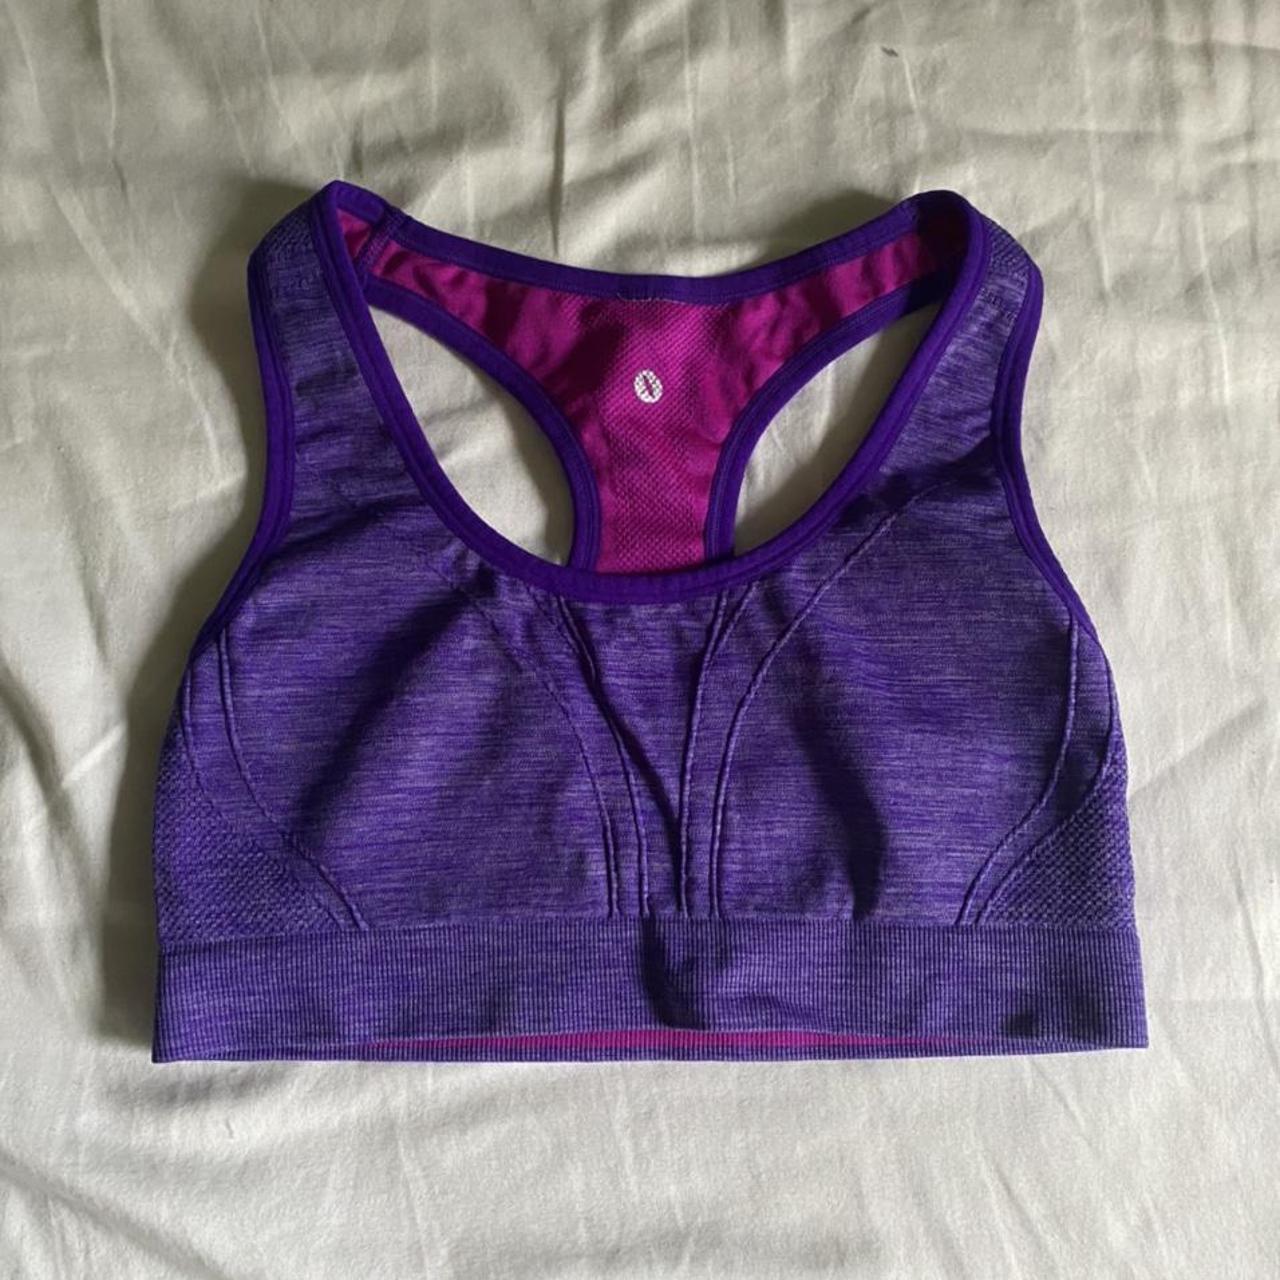 purple xersion sports bra , -size small, -worn maybe